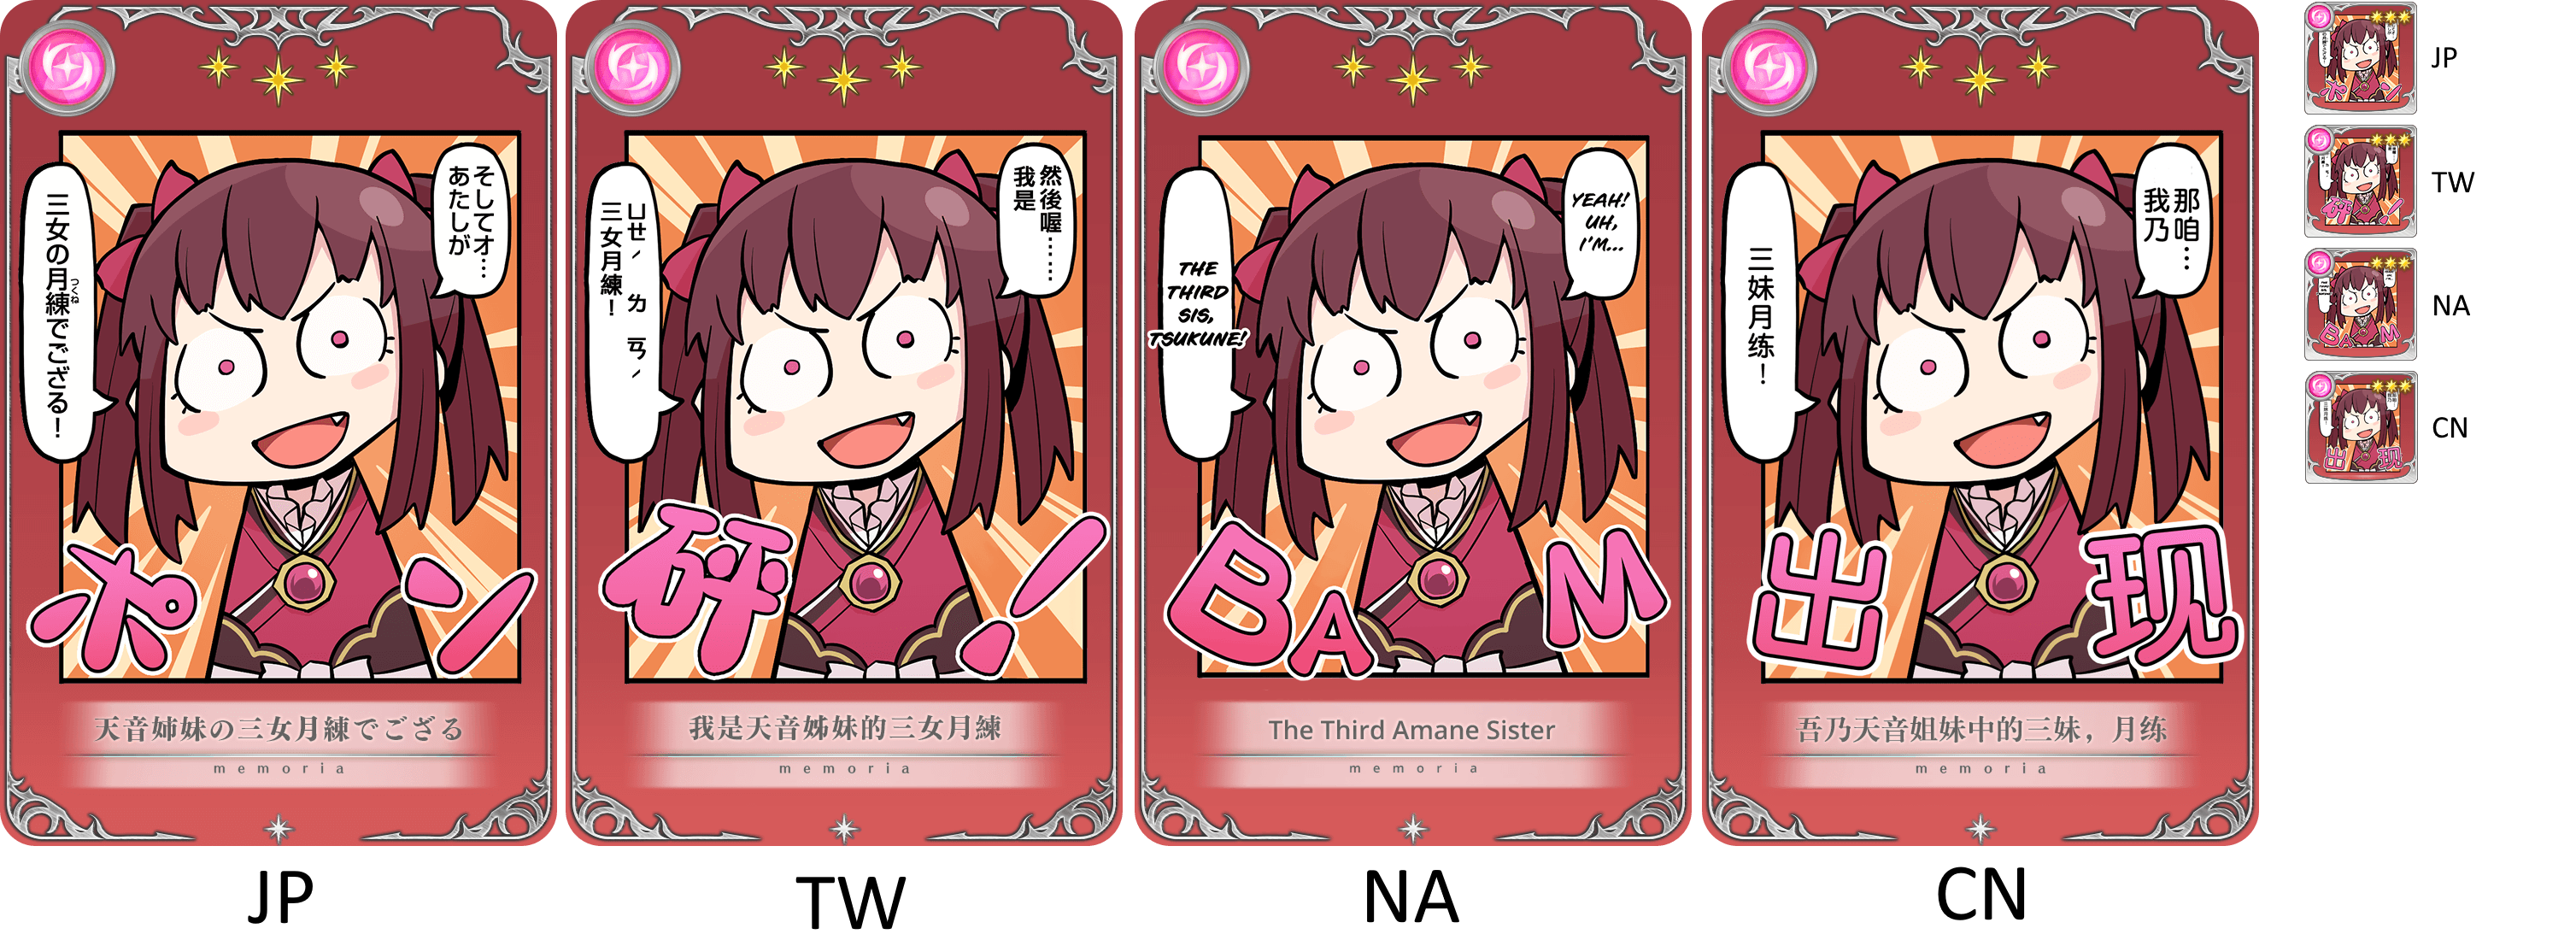 ‘Tis I, the Third Amane Sister, Tsukune [memoria_1197]